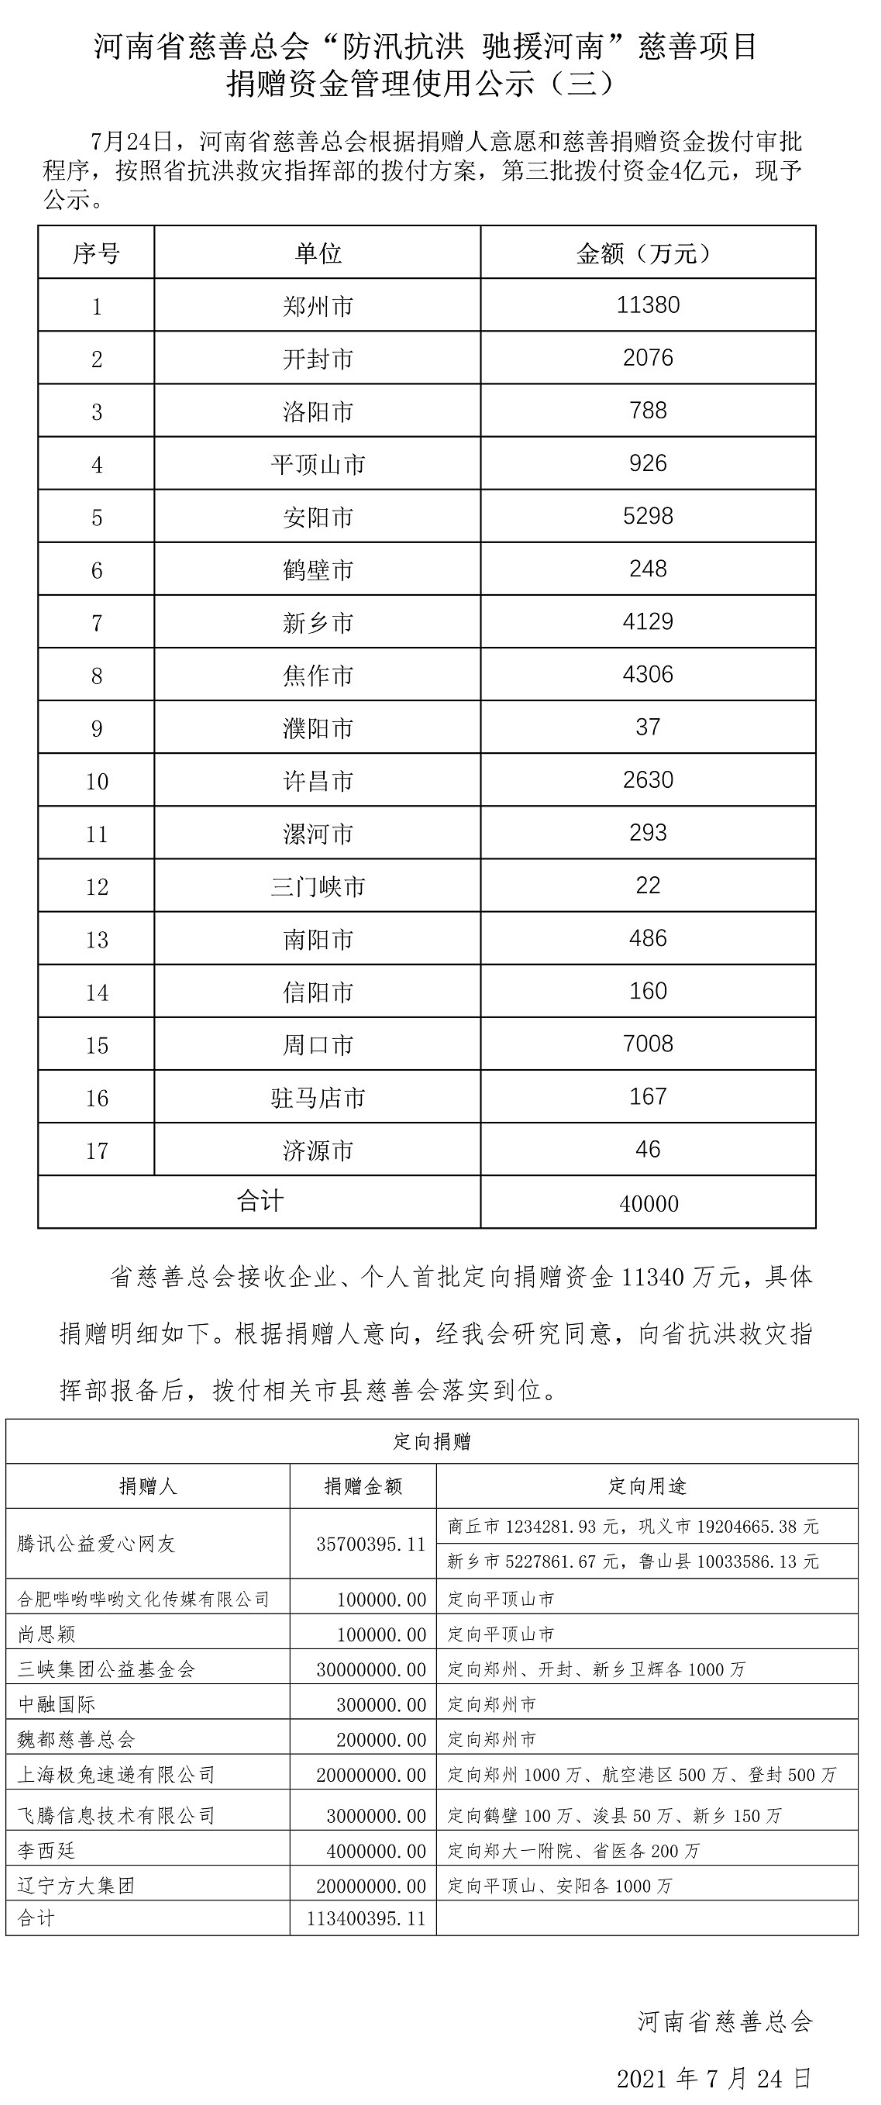 河南省慈善总会已接收抗洪救灾捐款29.74亿 已拨付26.81亿